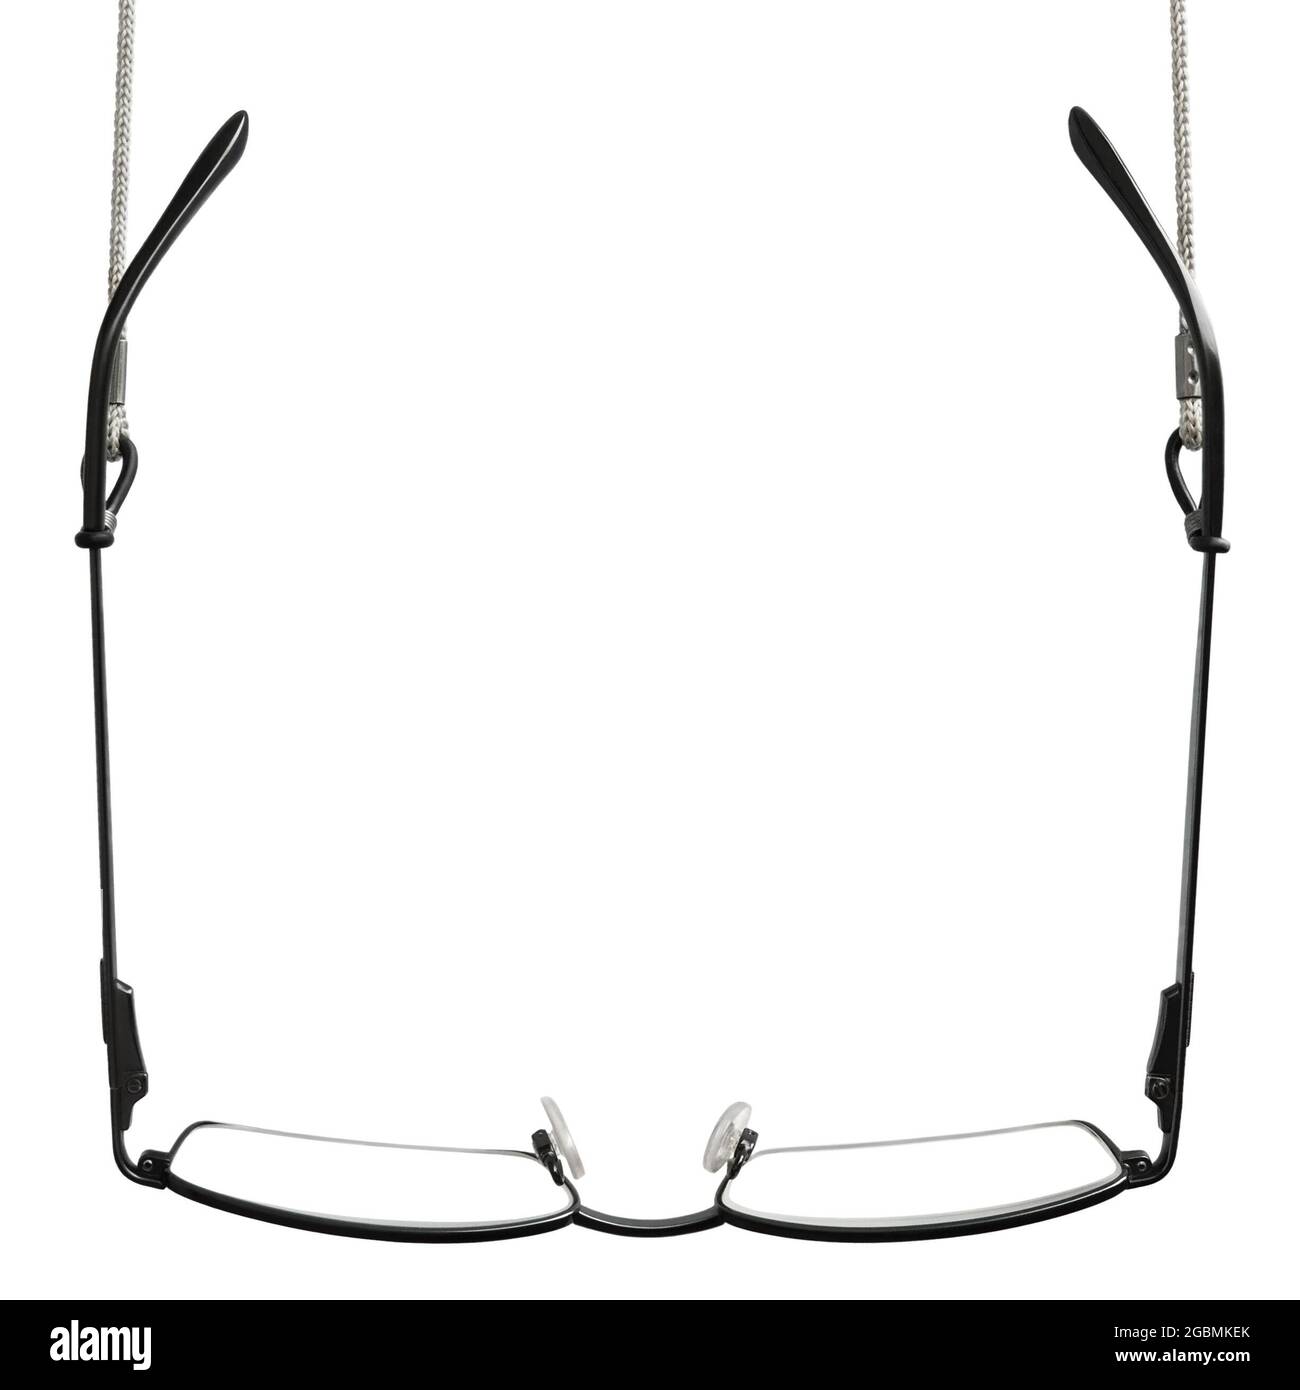 Schwarze Lesebrille, graue Brillenriemen Halter, isolierte hängende Leser croakies, leere vertikale Kopie Raum Hintergrund, Nahsicht Stockfoto